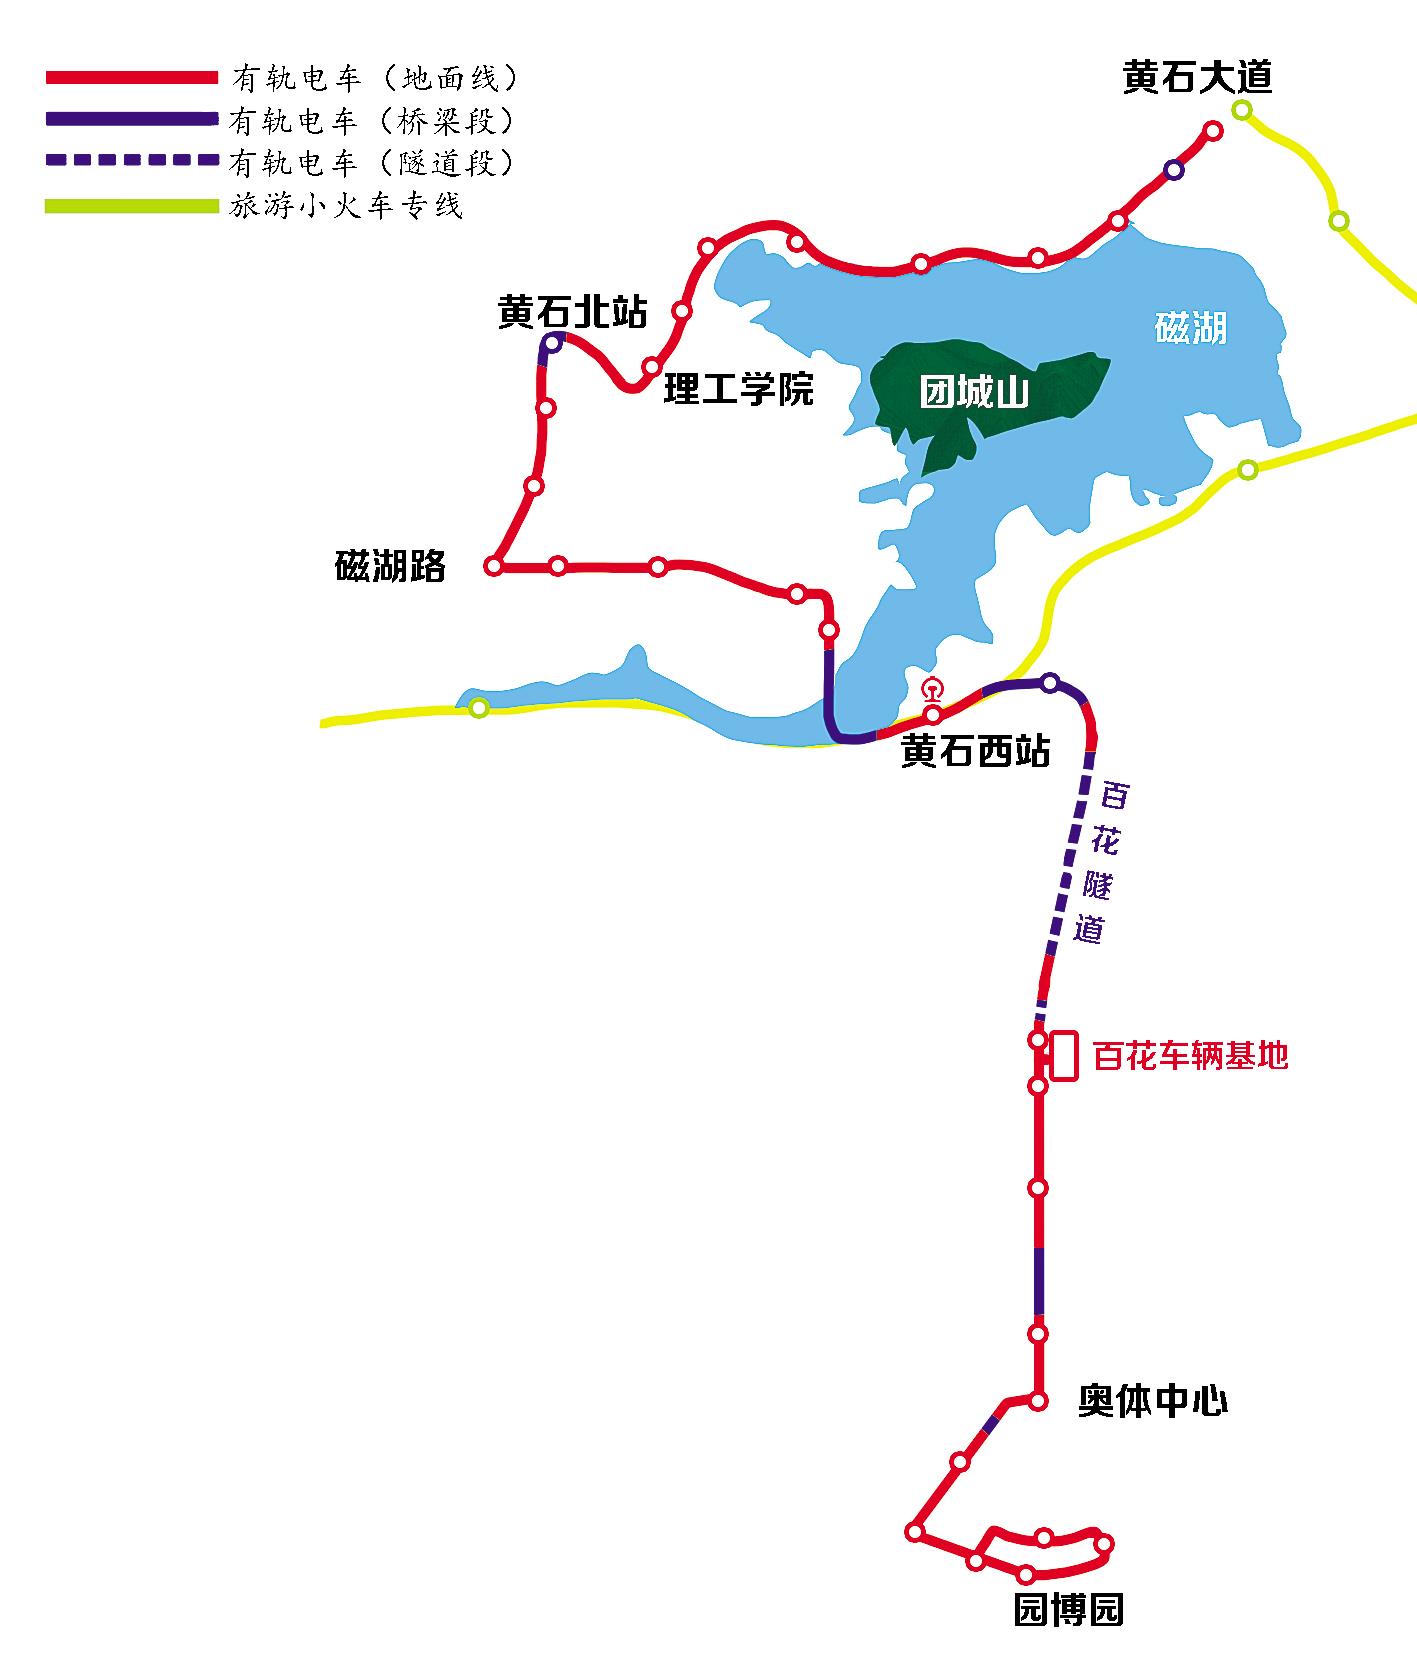 [荆楚网]黄石将成为继武汉之后,湖北省内第二个建设有轨电车的城市